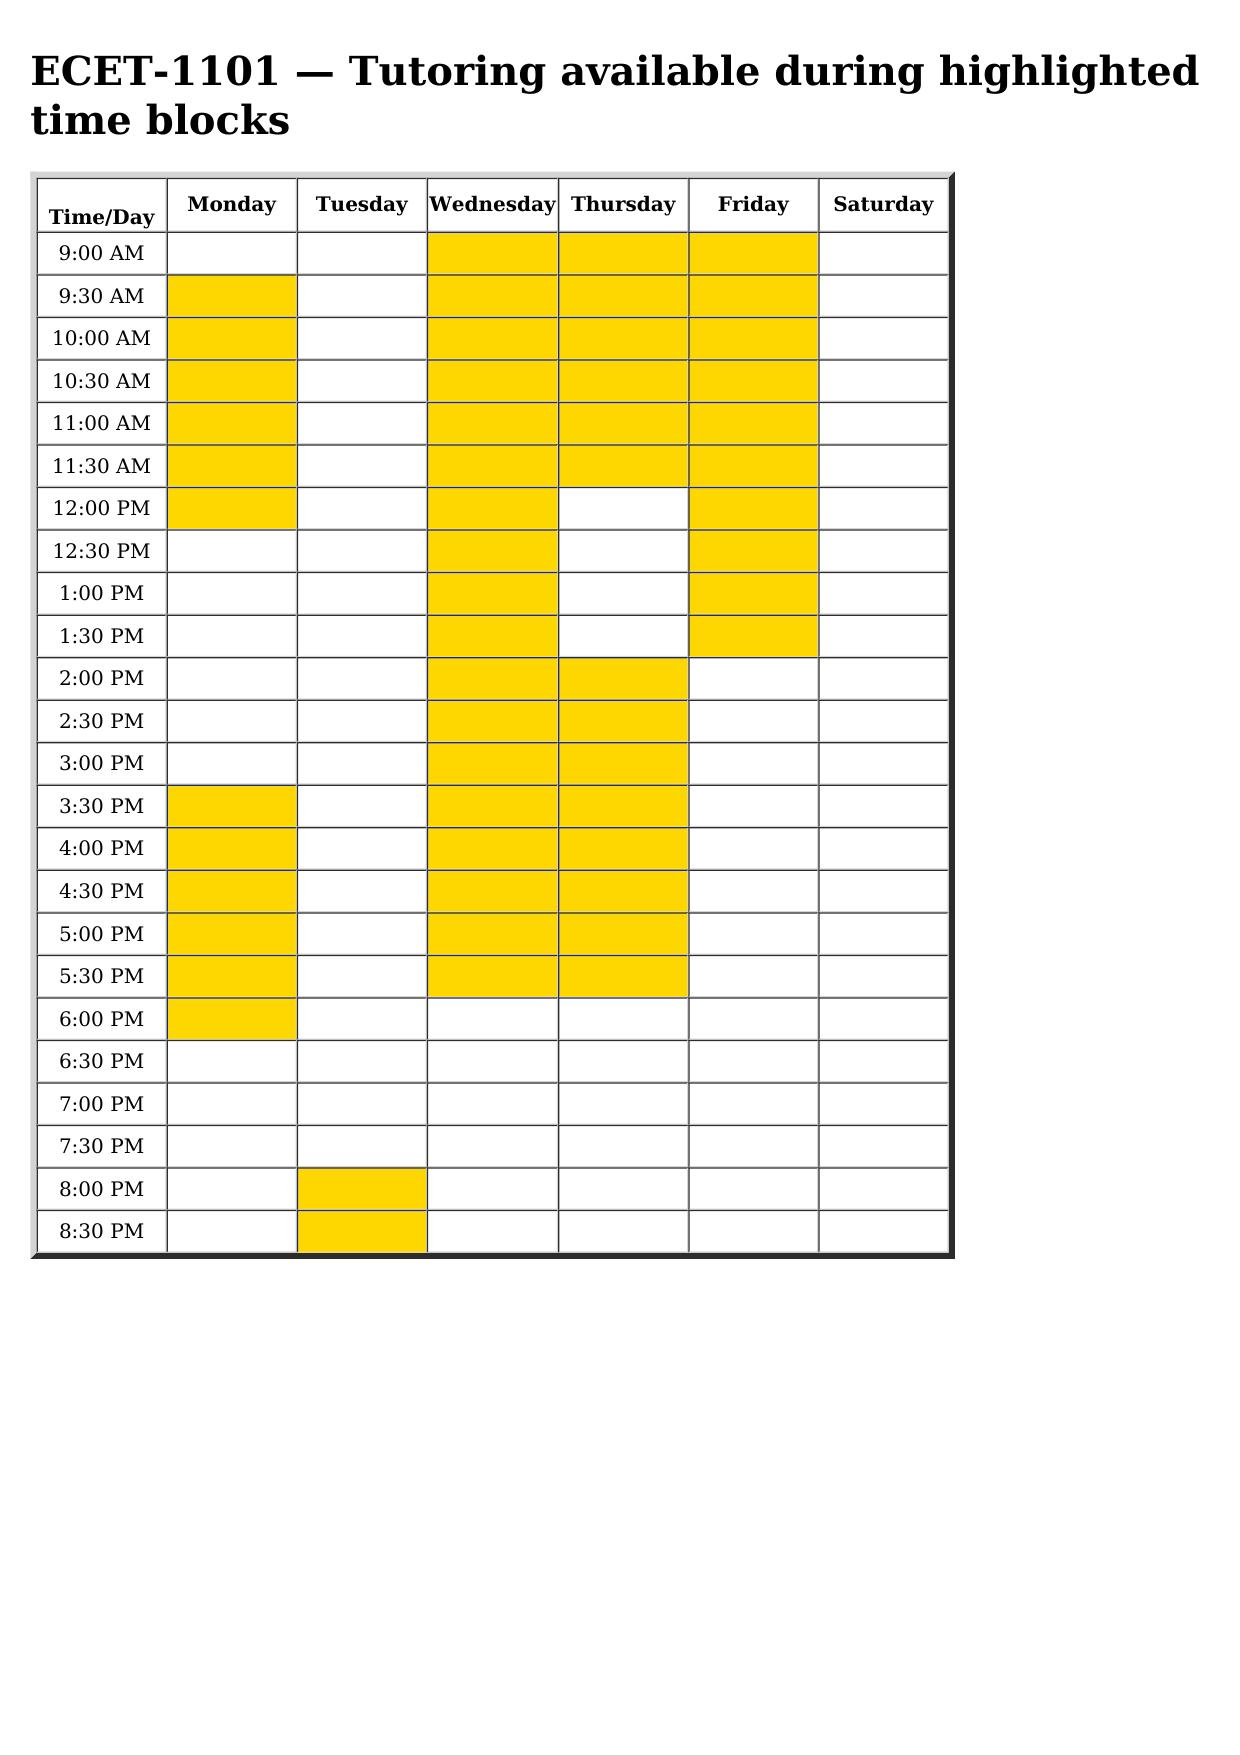 ecet 1101 schedule